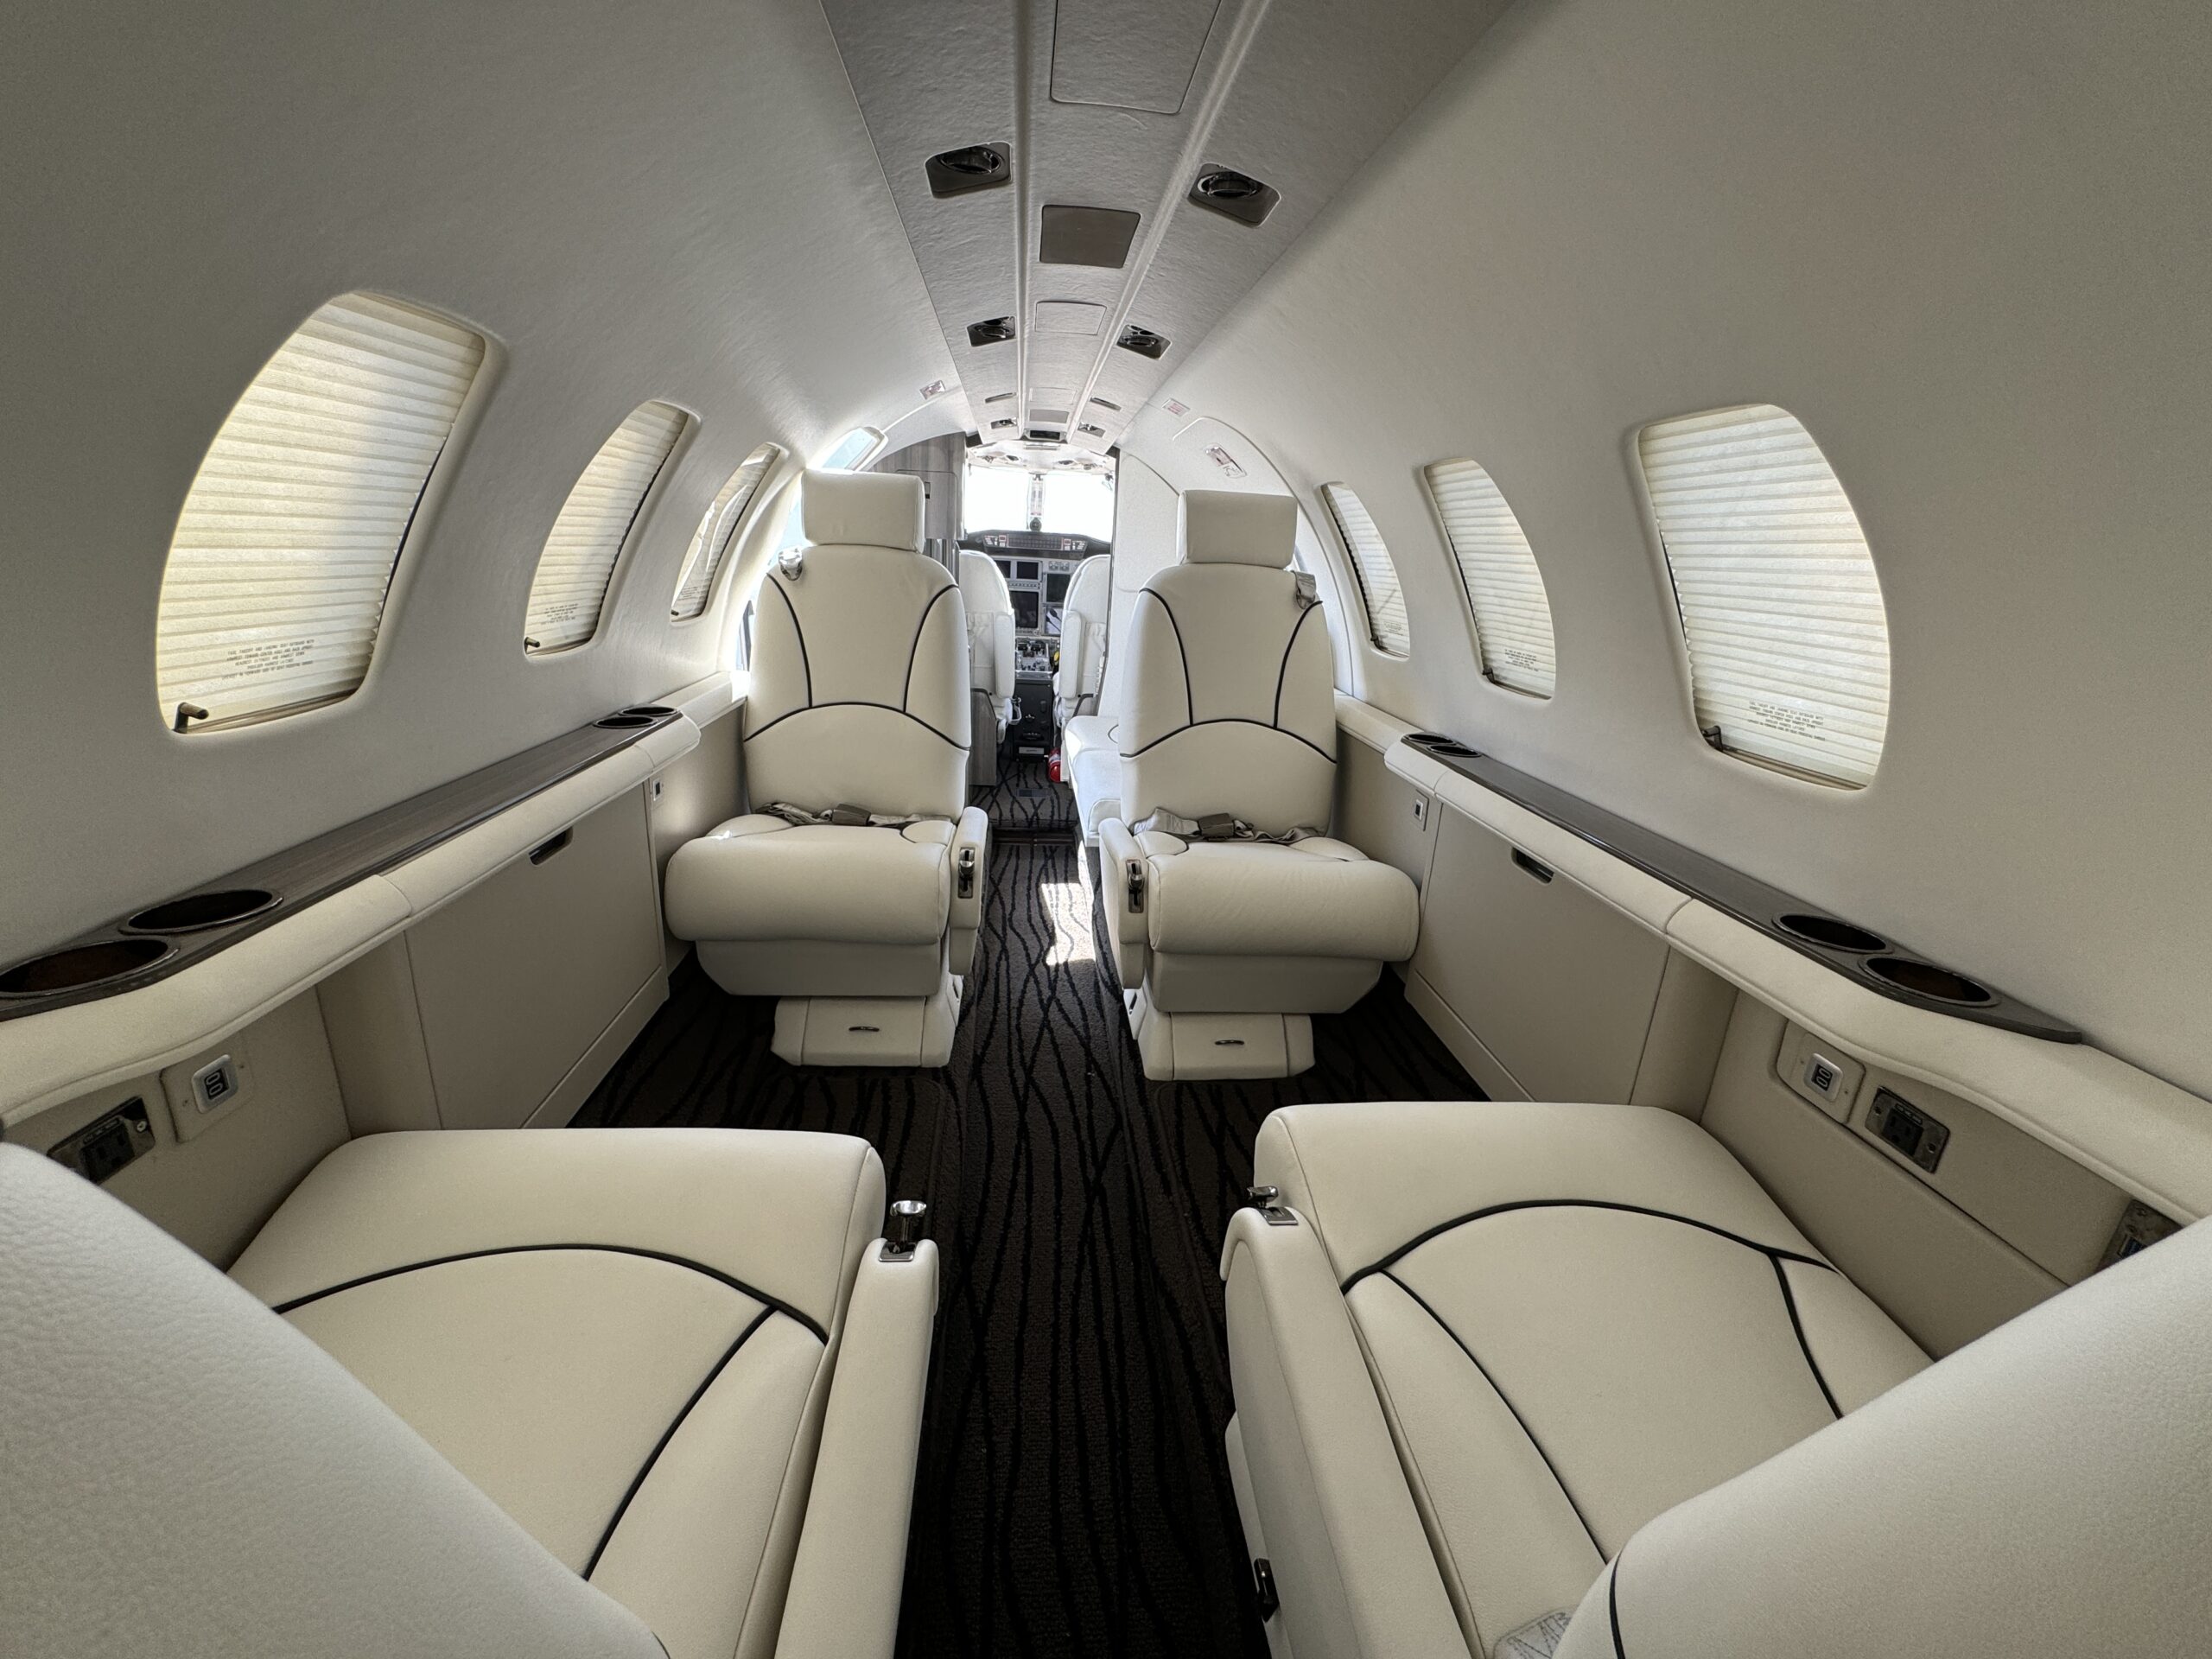 Citation 560 Interior, Citation Interior, Cessna Interior, Jet Interior, CJ Interior, Aircraft paint and interior